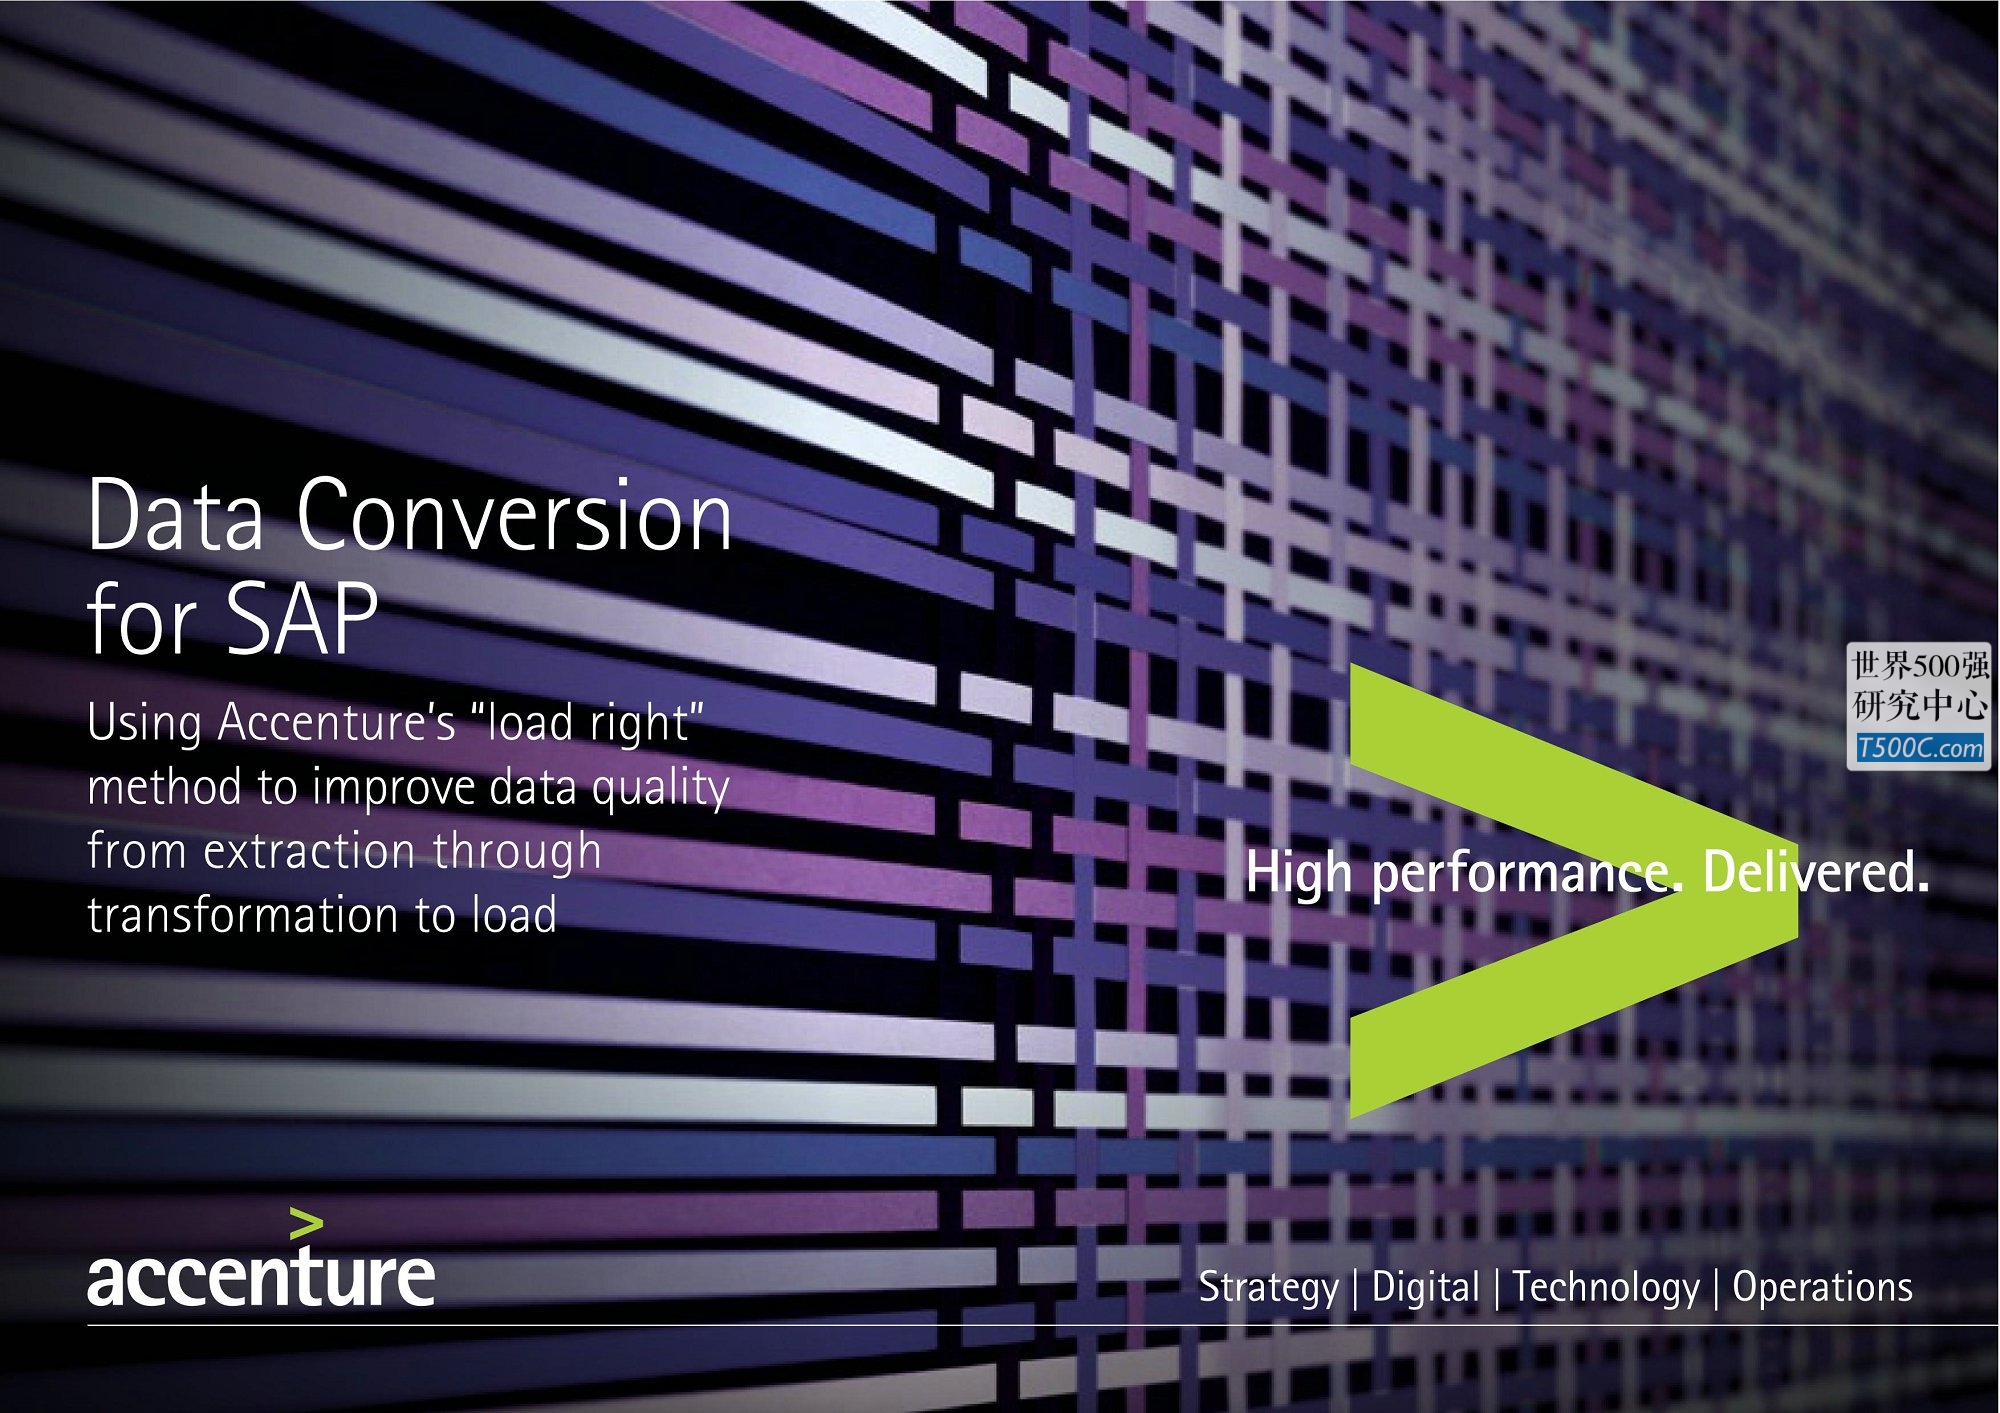 埃森哲Accenture_业务宣传册Brochure_T500C.com_Data-Conversion-For-SAP.pdf